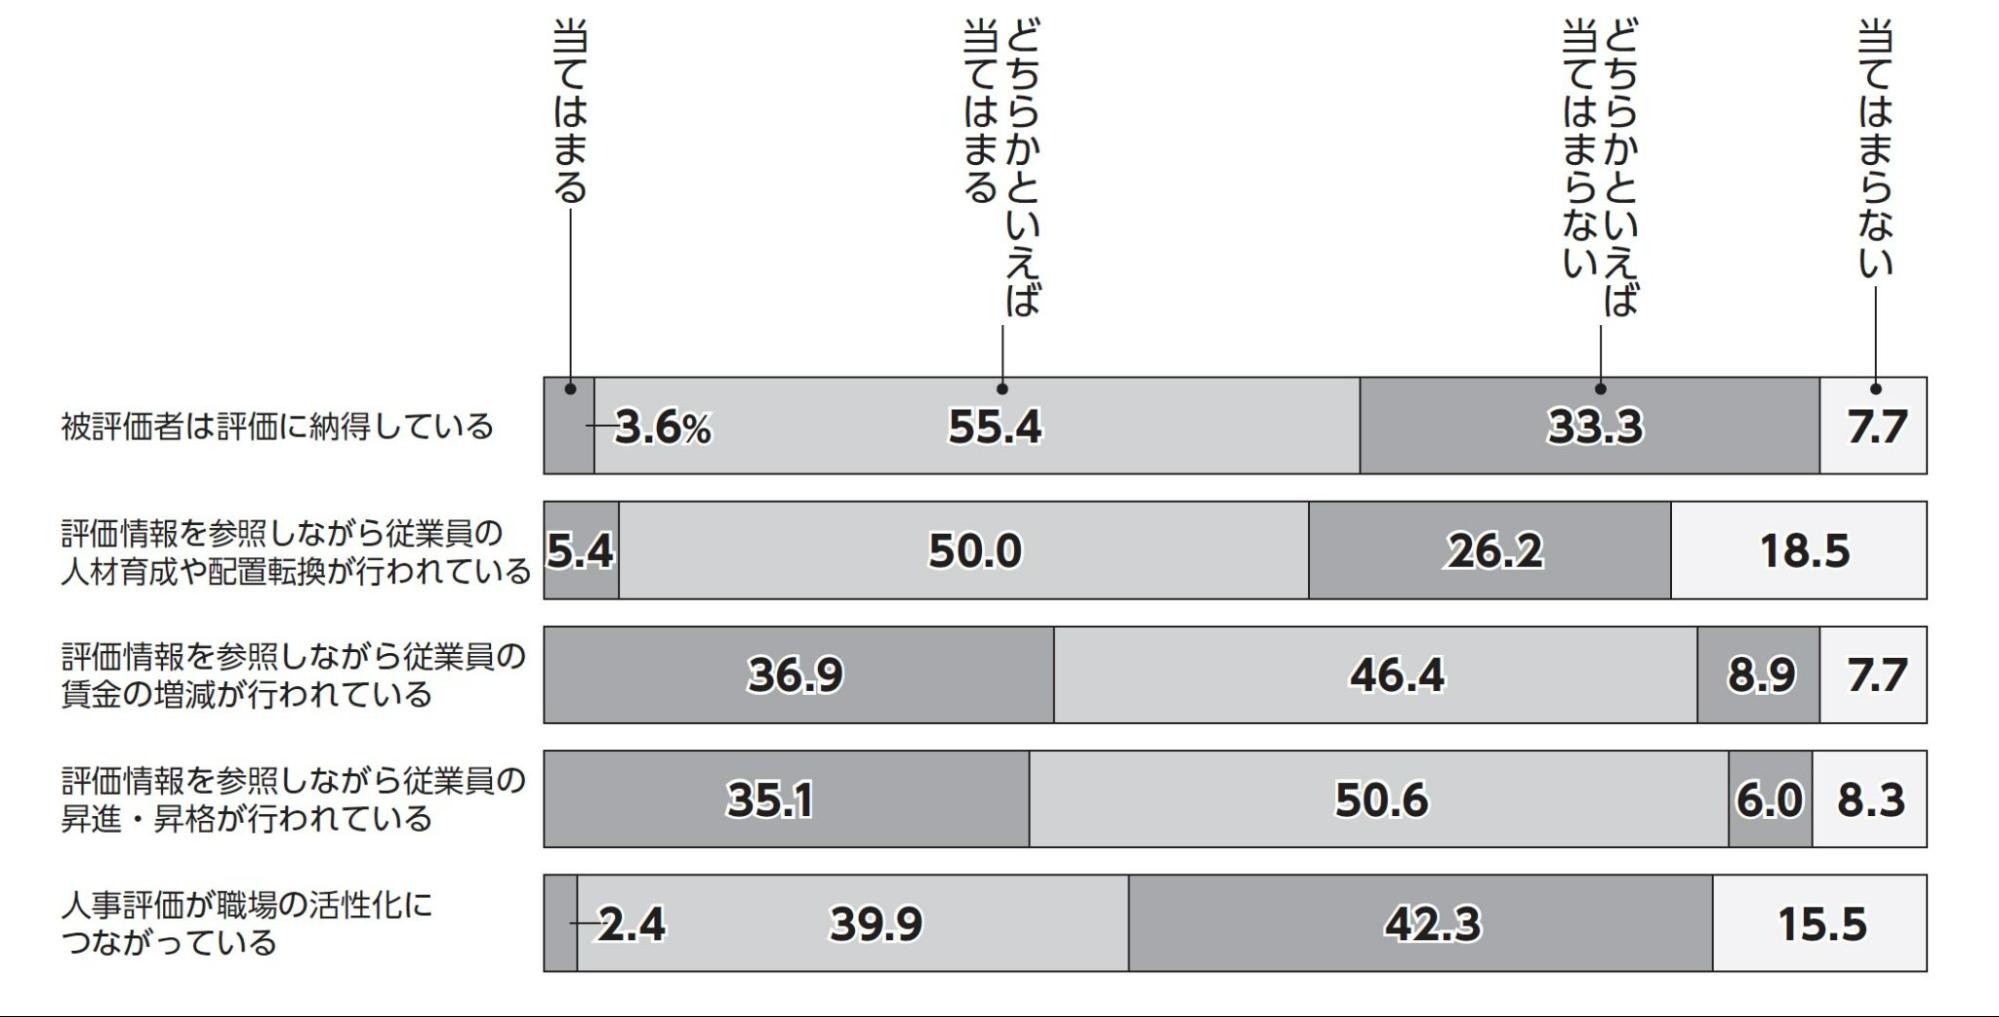 『日本の人事部 人事白書 2021』「評価制度の状況」回答結果グラフ